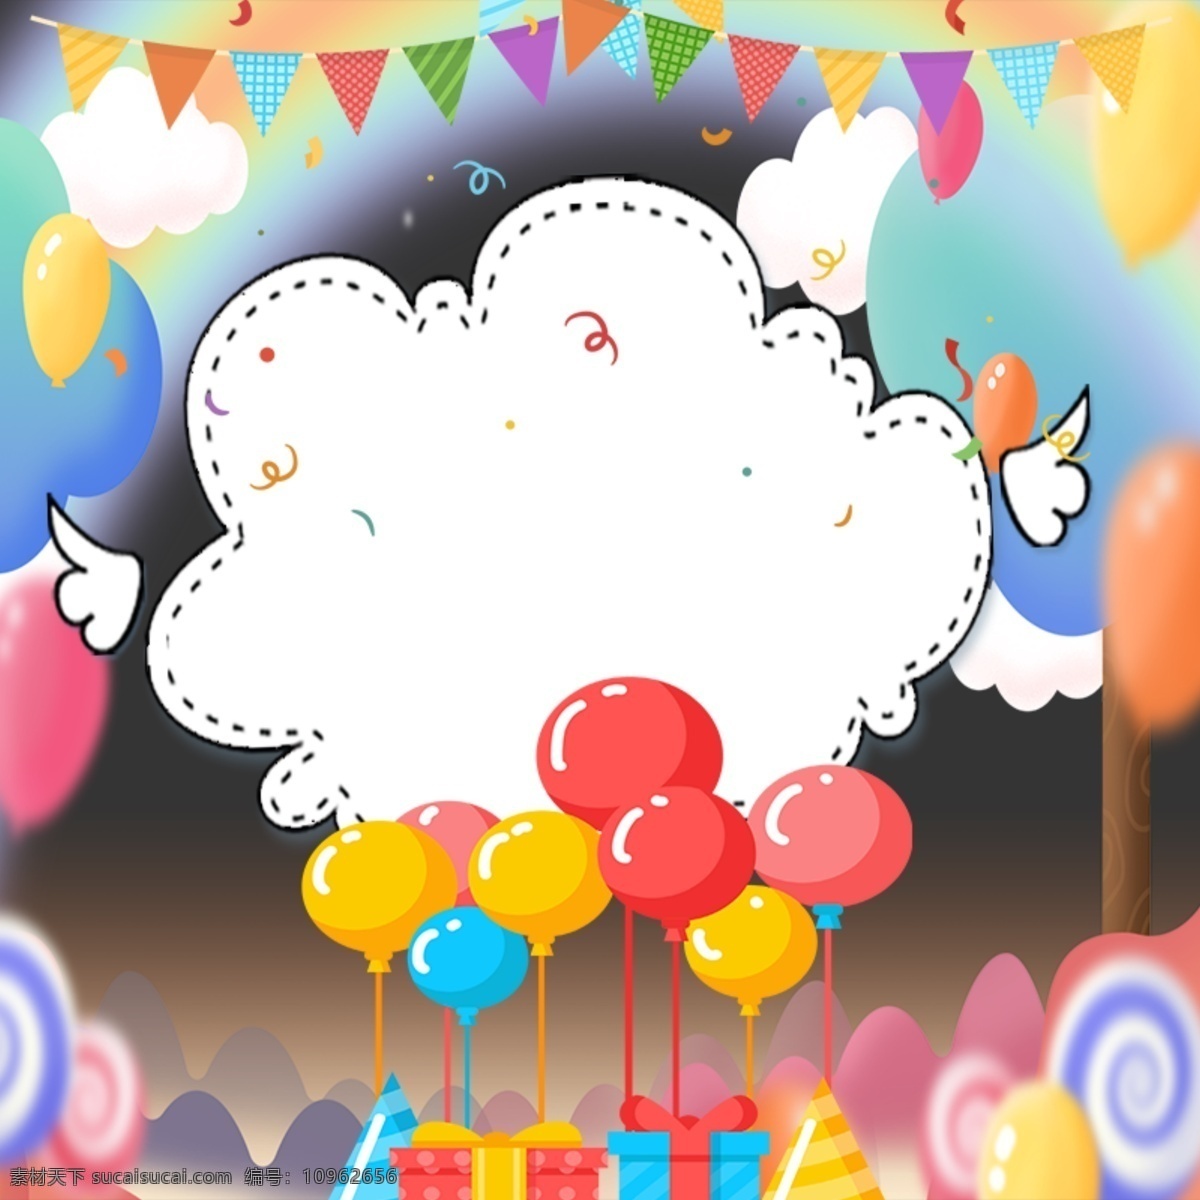 彩色 气球 彩旗 海报 背景 模板 矢量 多彩 节日 生日 派对 卡通